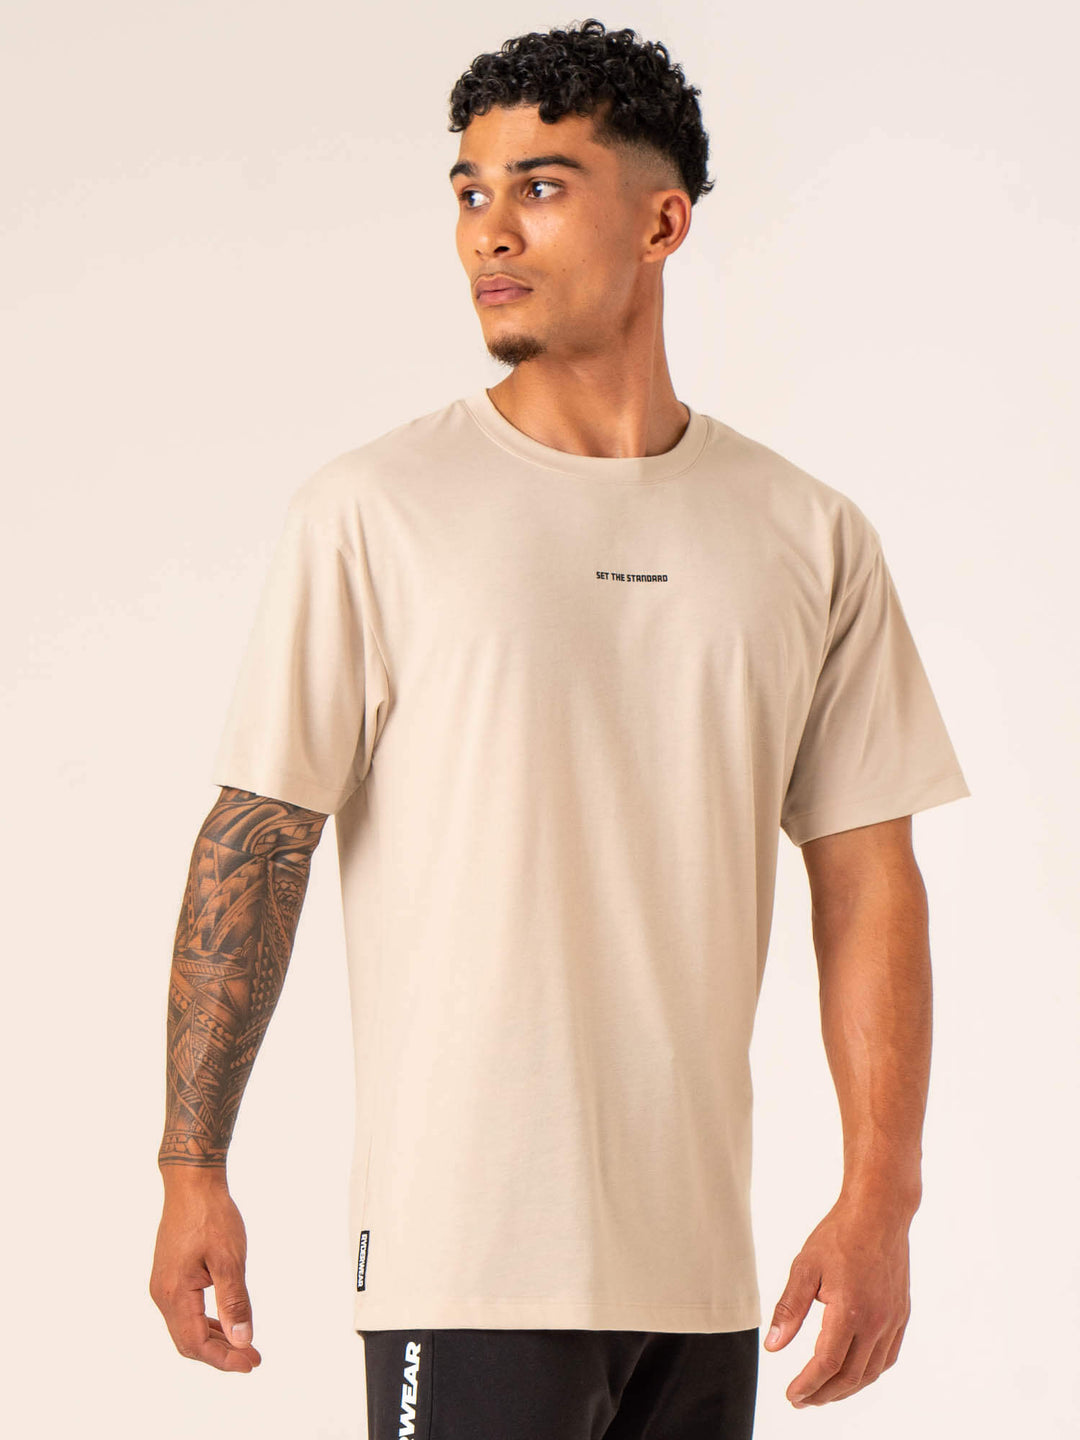 Emerge Oversized T-Shirt - Sand Clothing Ryderwear 